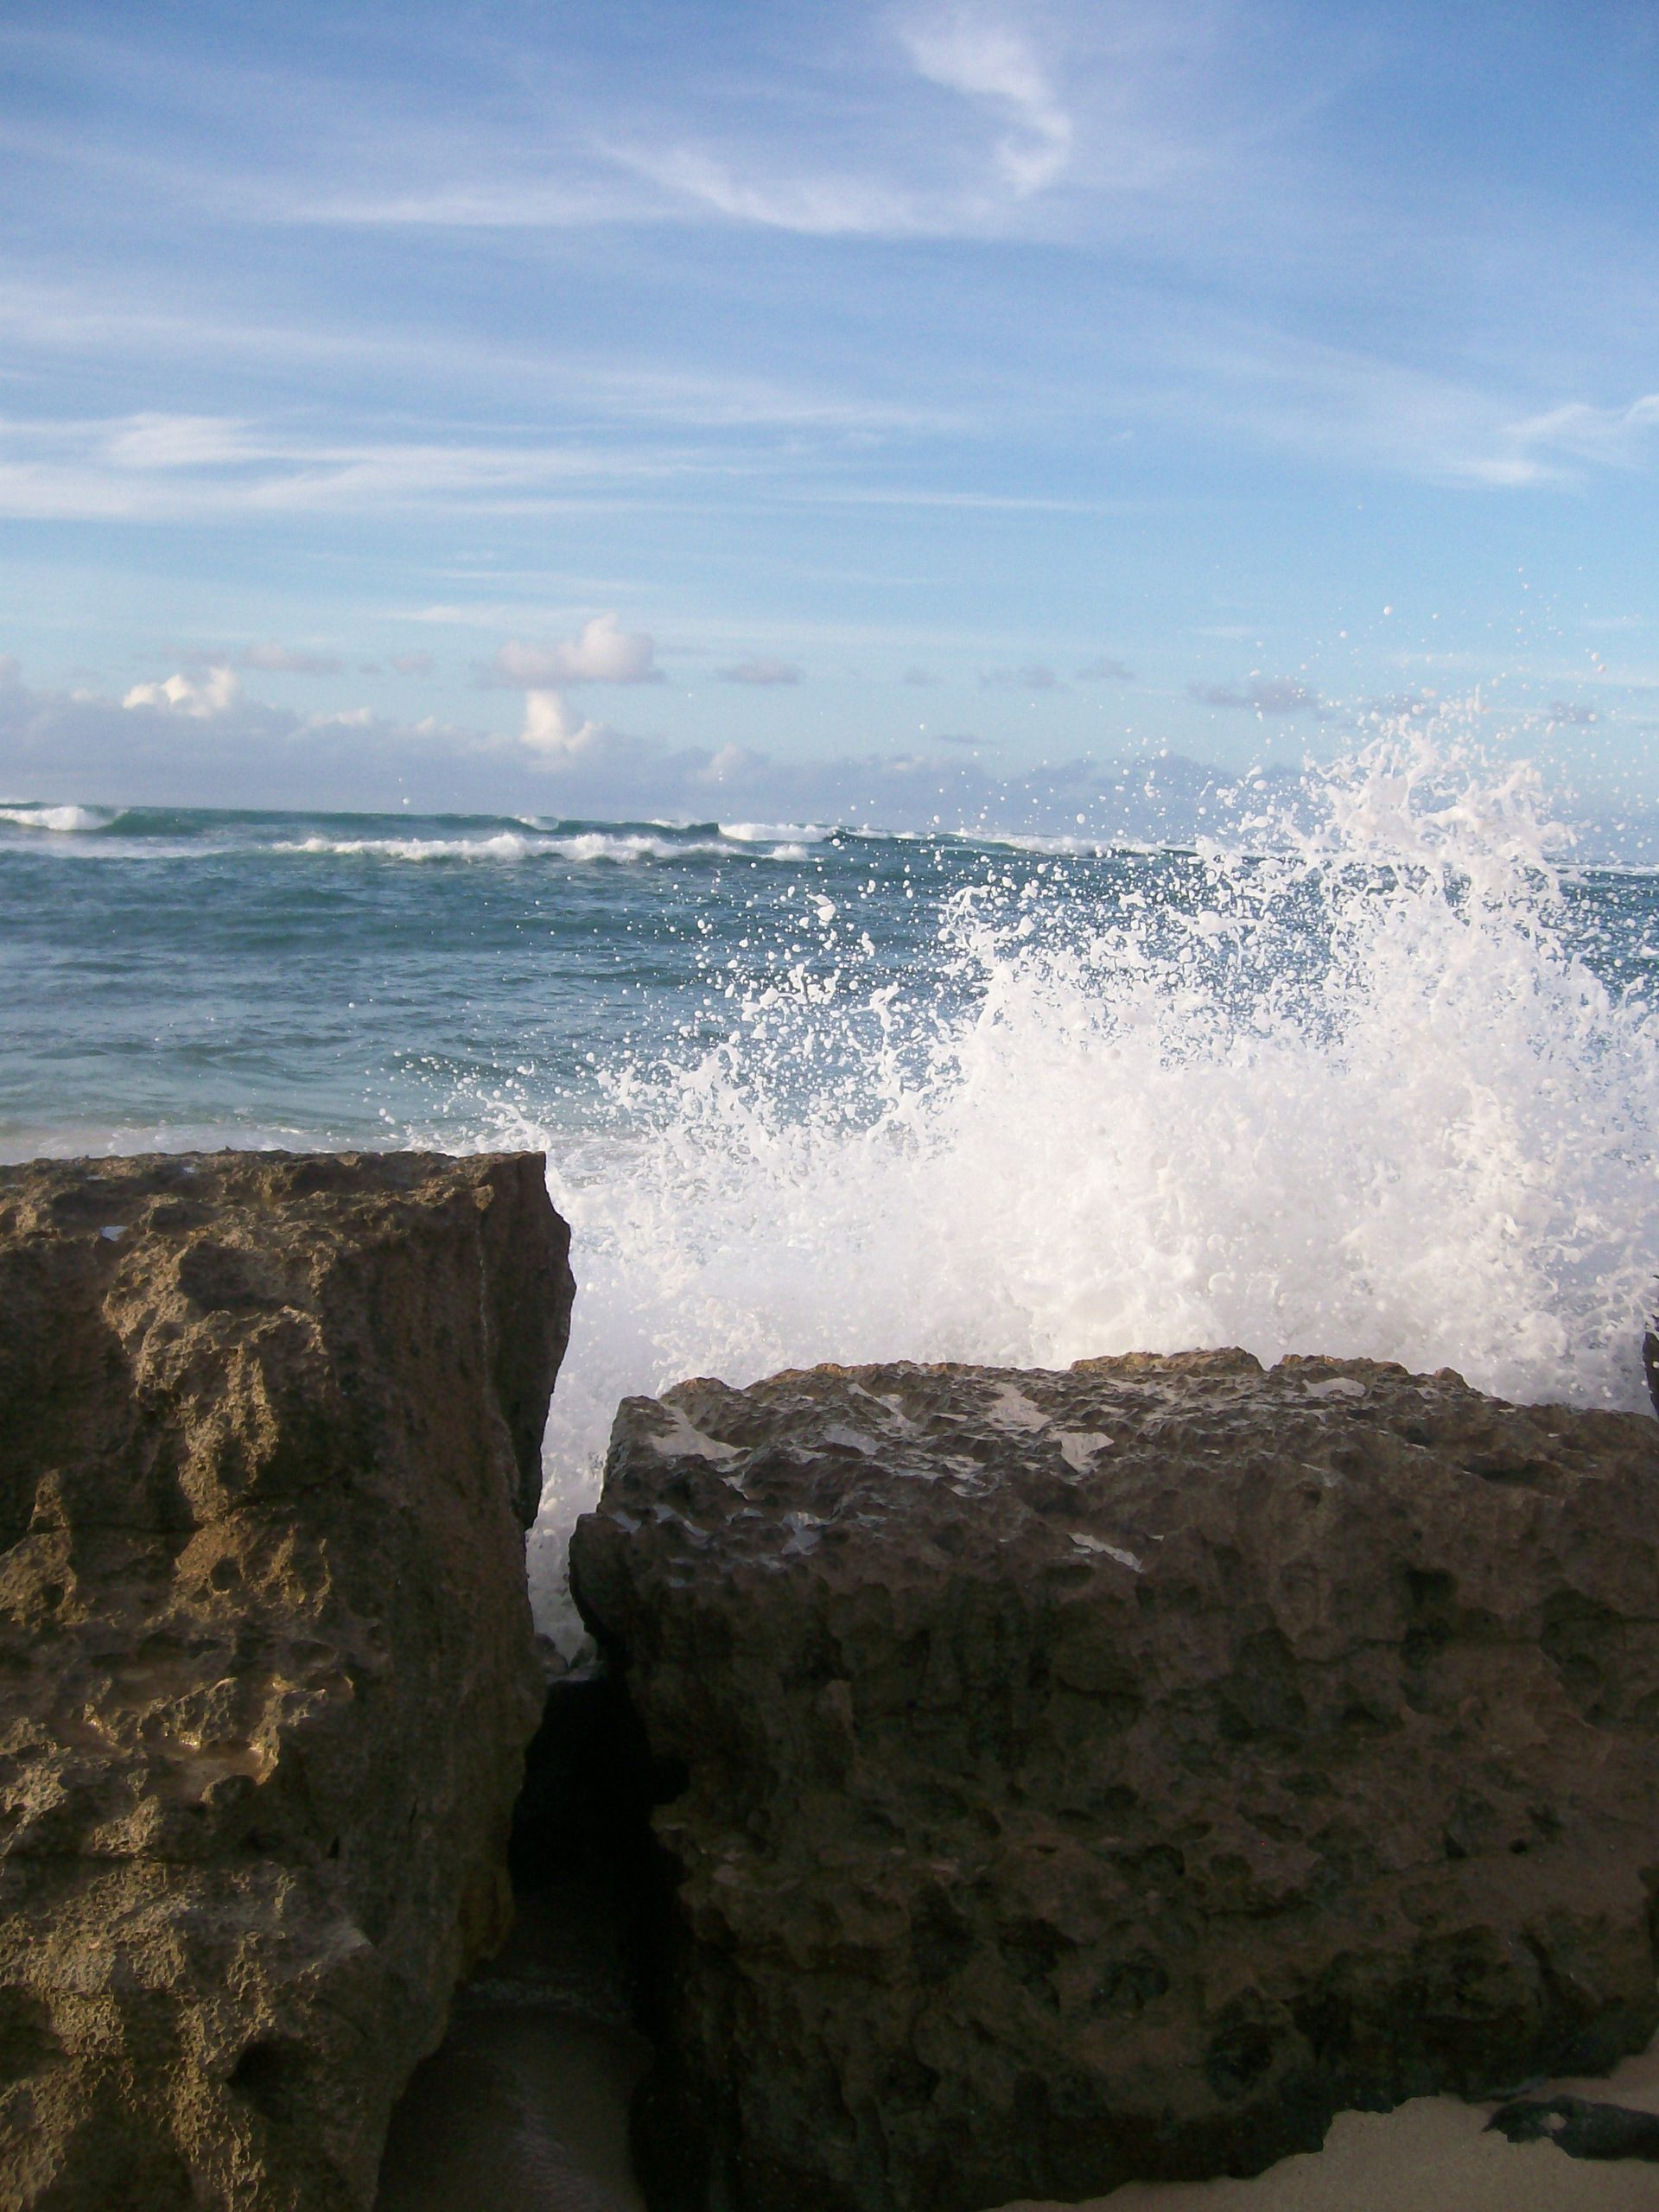 Waves crash on the rocks in Hawaii.